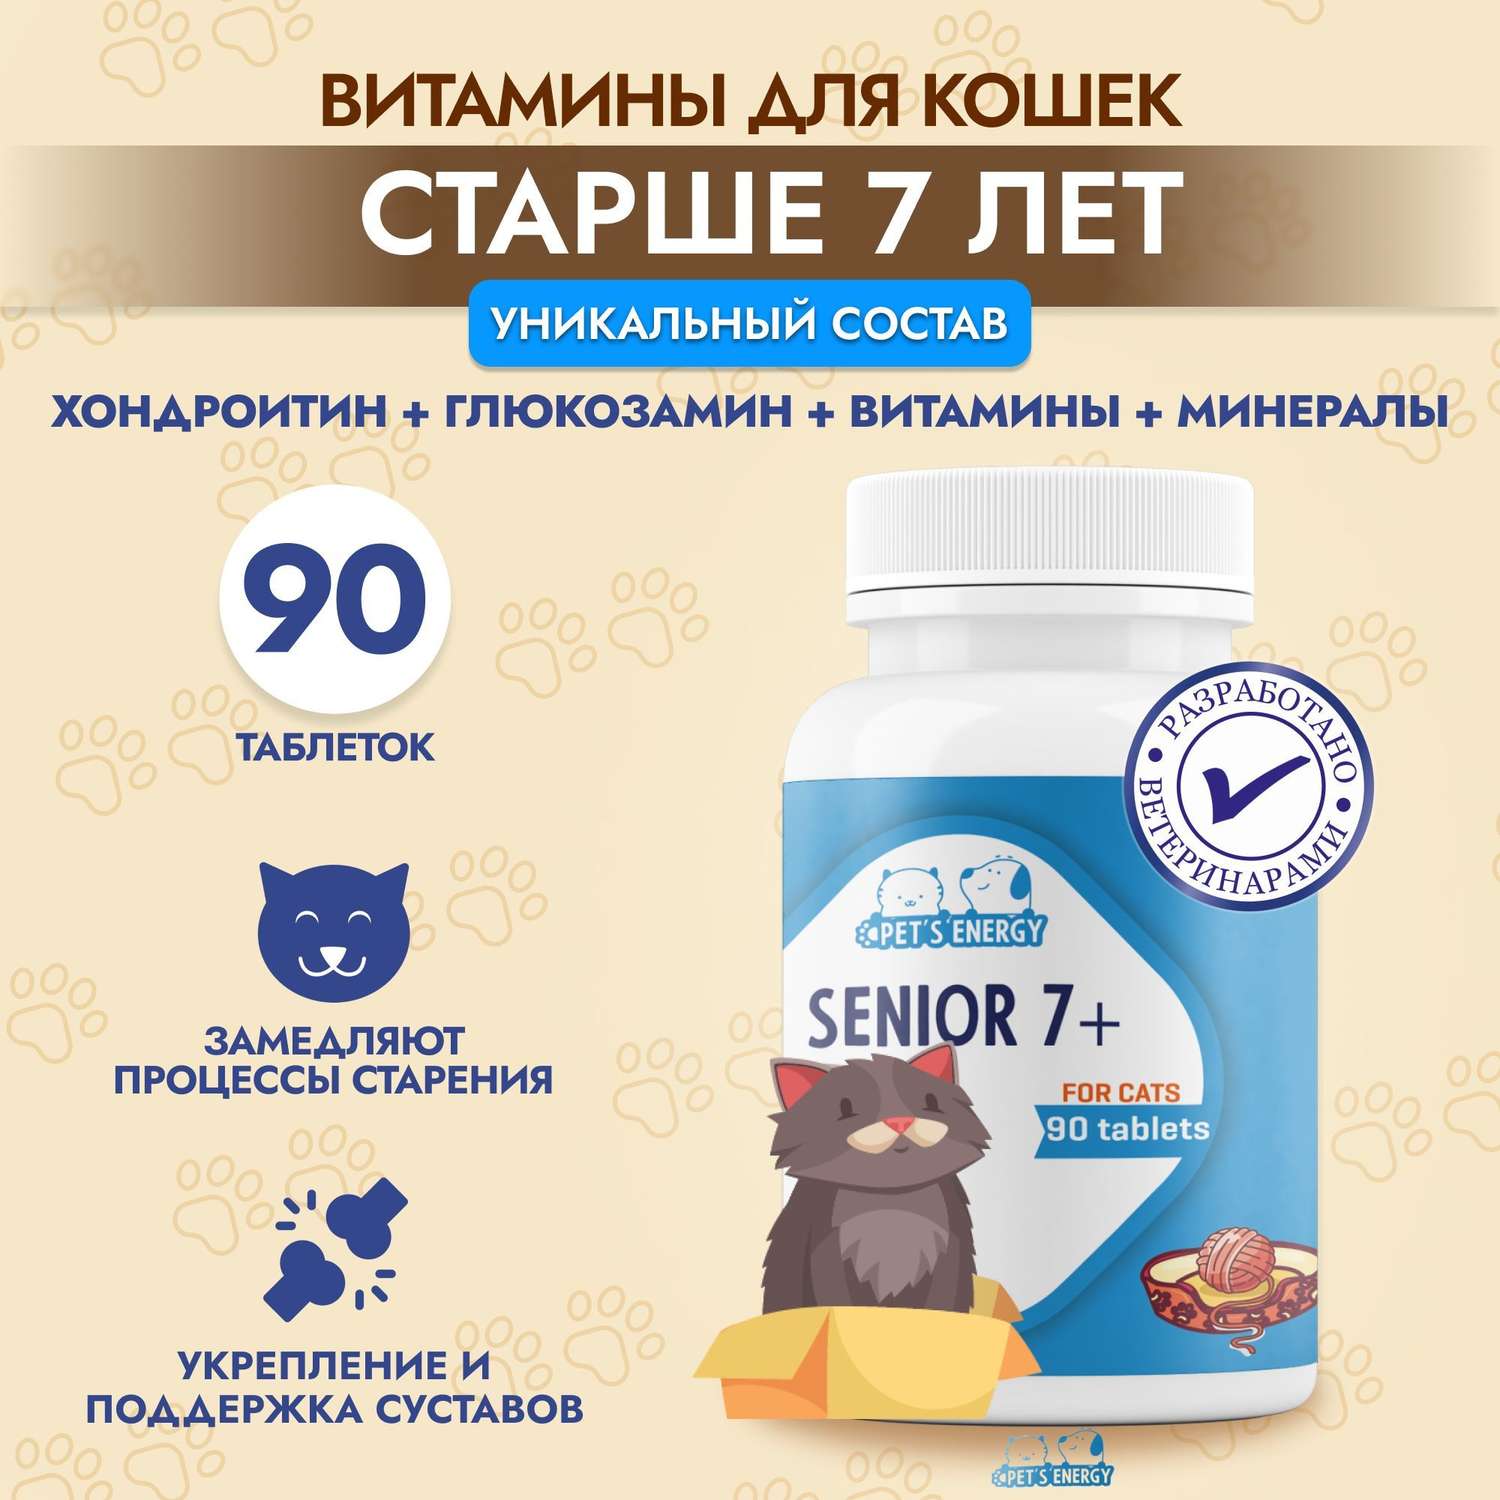 Витамины для пожилых кошек 7+ PETS ENERGY 90 таблеток для иммунитета и суставов - фото 2